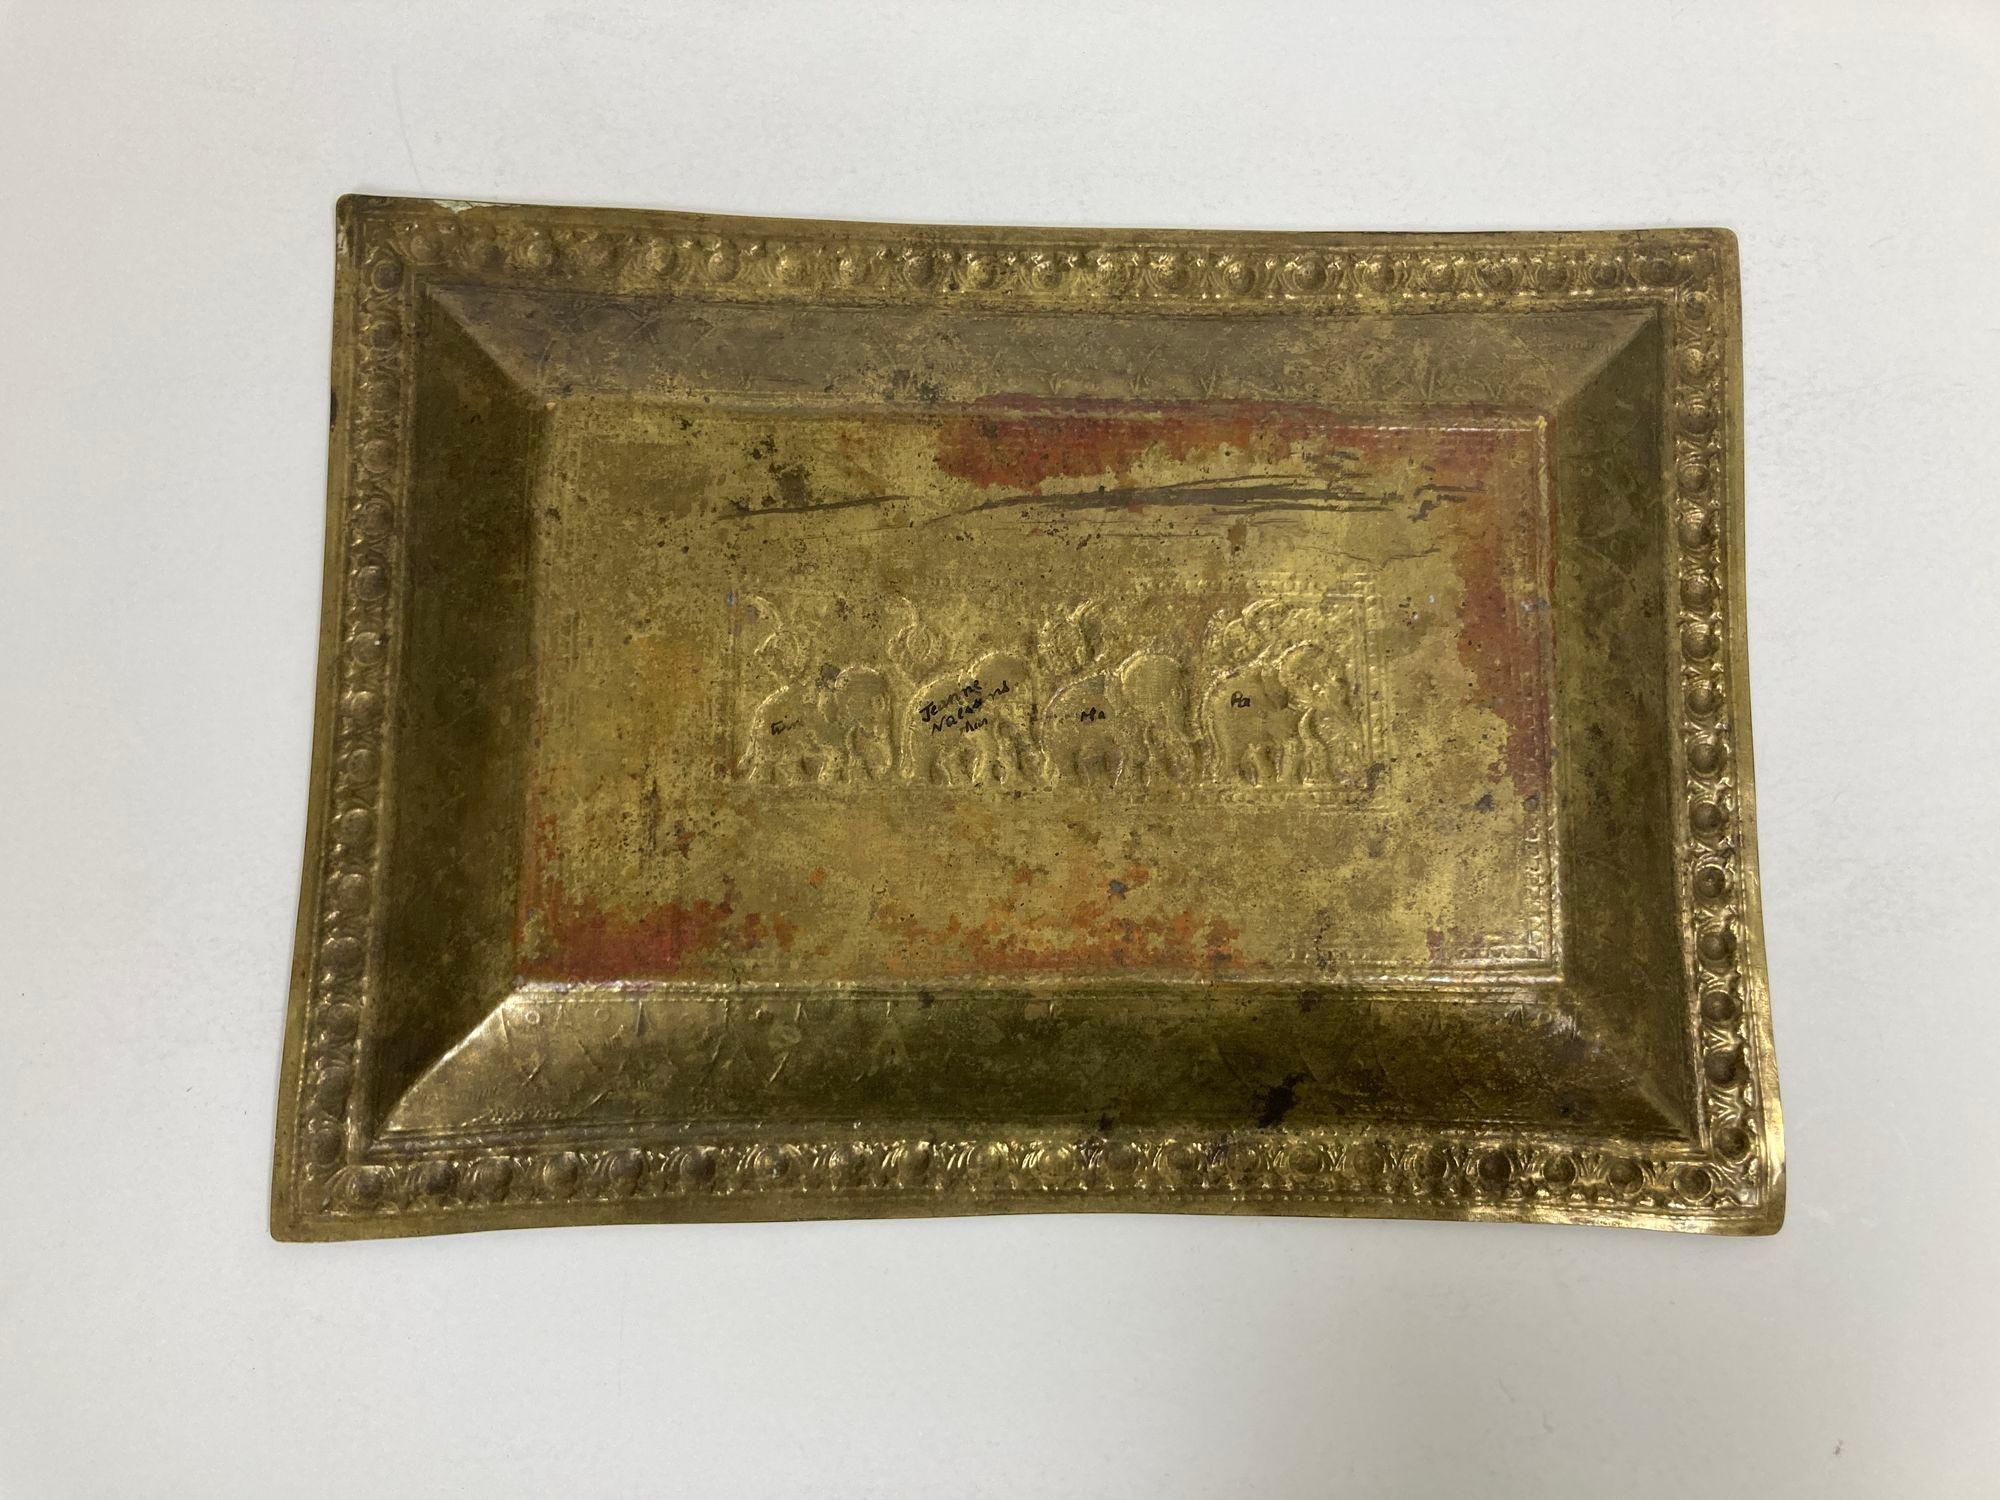 Vintage Brass Tray Indian Mughal Elephants Motif Engraved Serving Platter For Sale 2